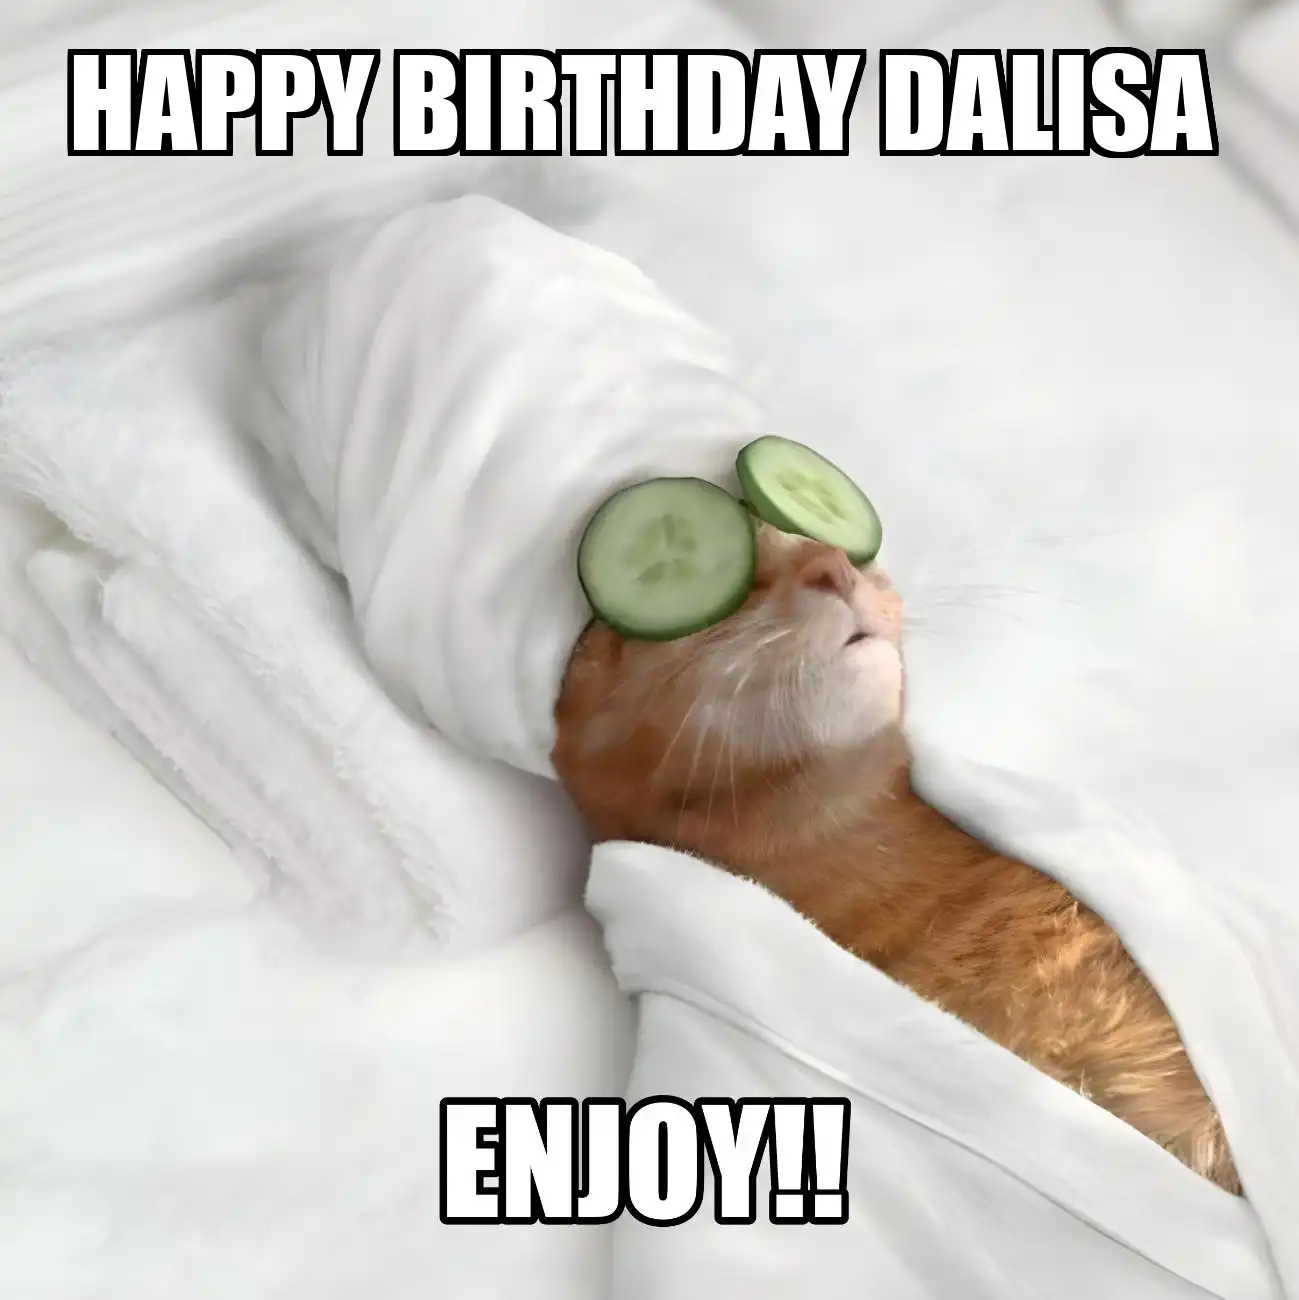 Happy Birthday Dalisa Enjoy Cat Meme